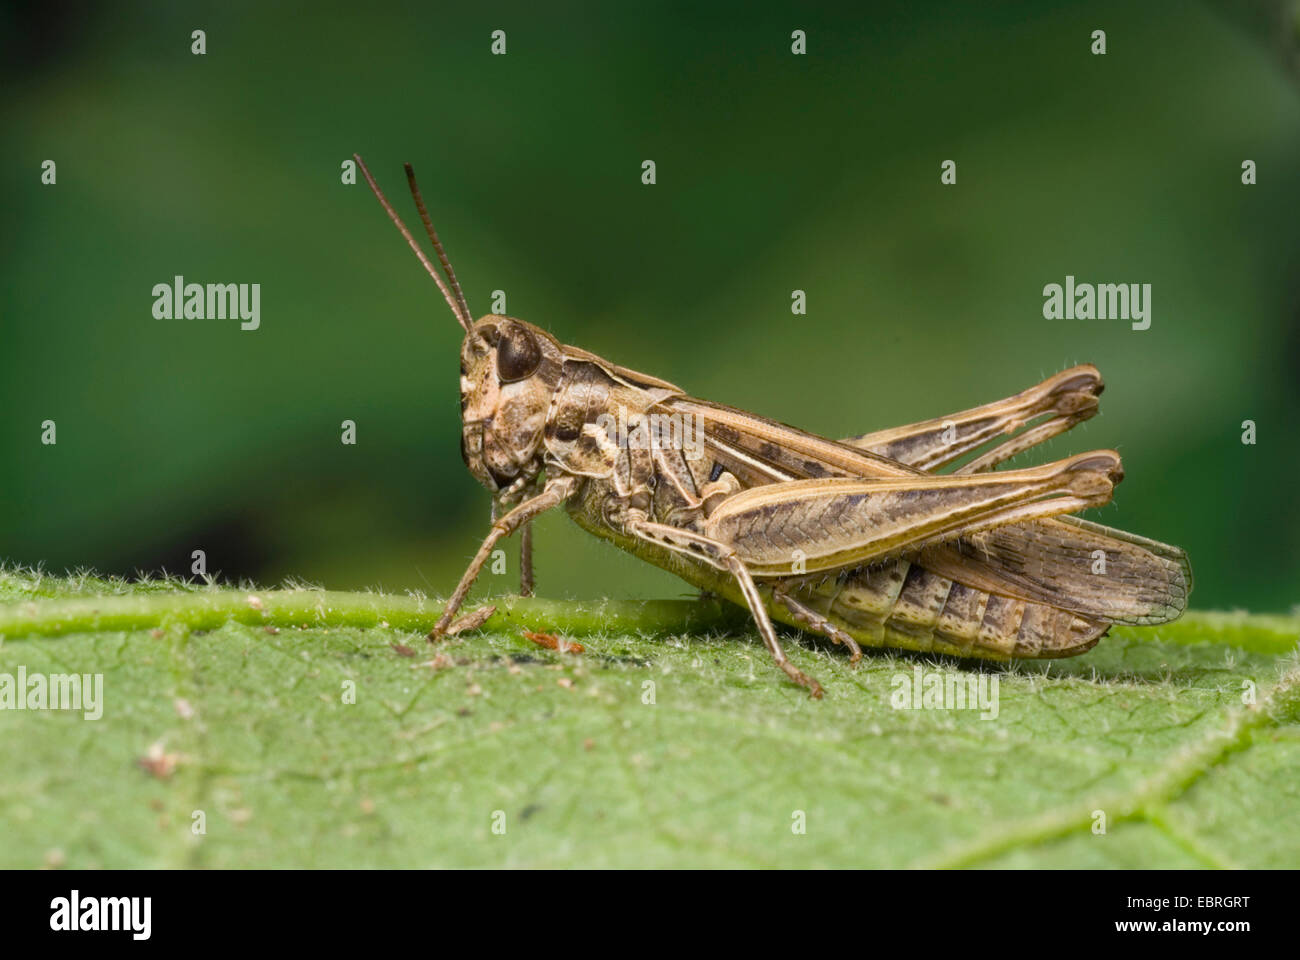 Bow-winged grasshopper (Chorthippus biguttulus), assis sur une feuille, Allemagne Banque D'Images